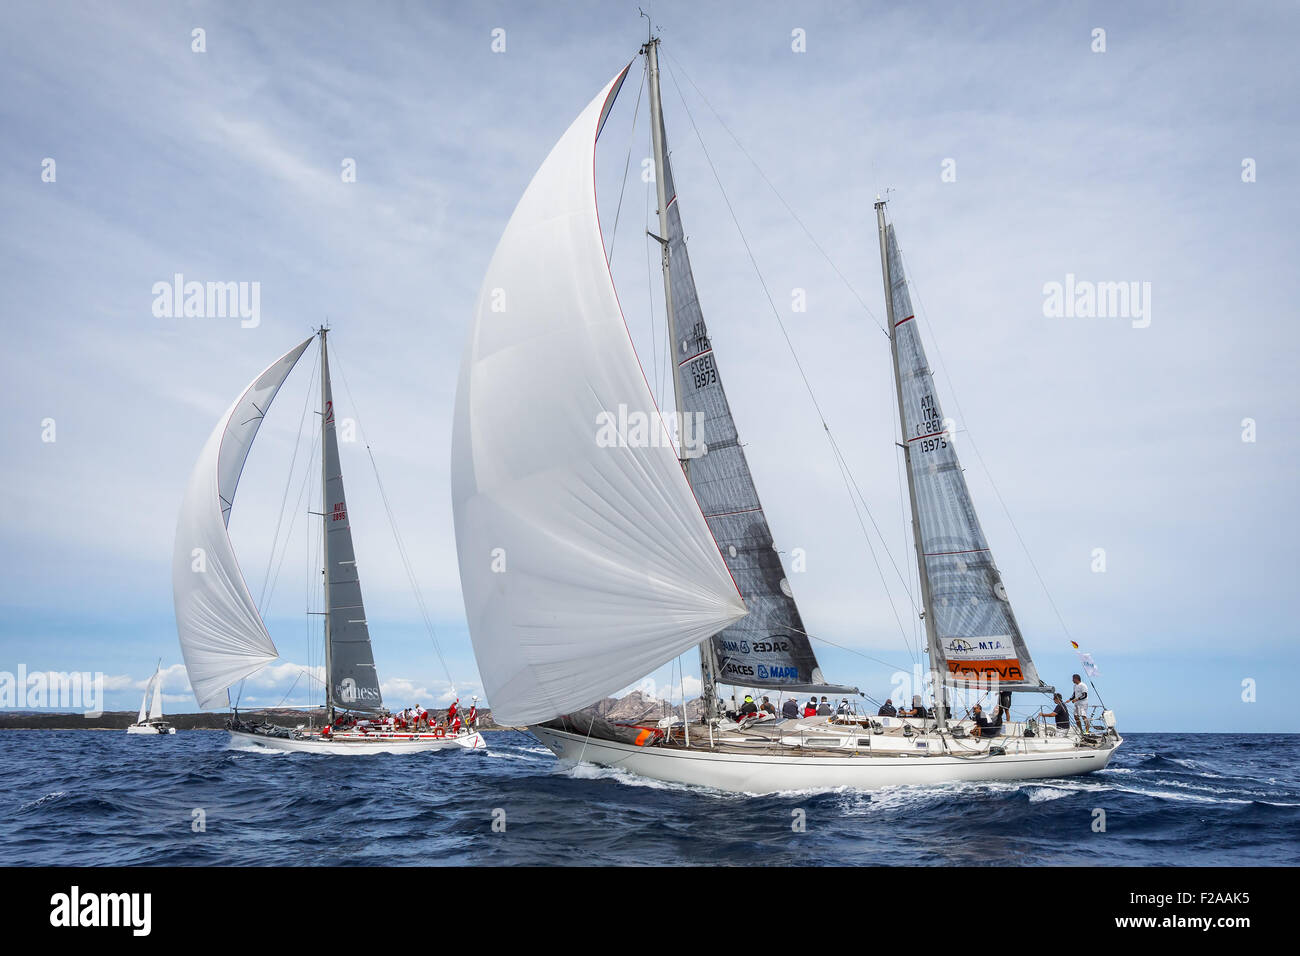 Maxi Yacht Rolex Cup 2015 sail boat race. Porto Cervo, Sardinia, Italy Stock Photo